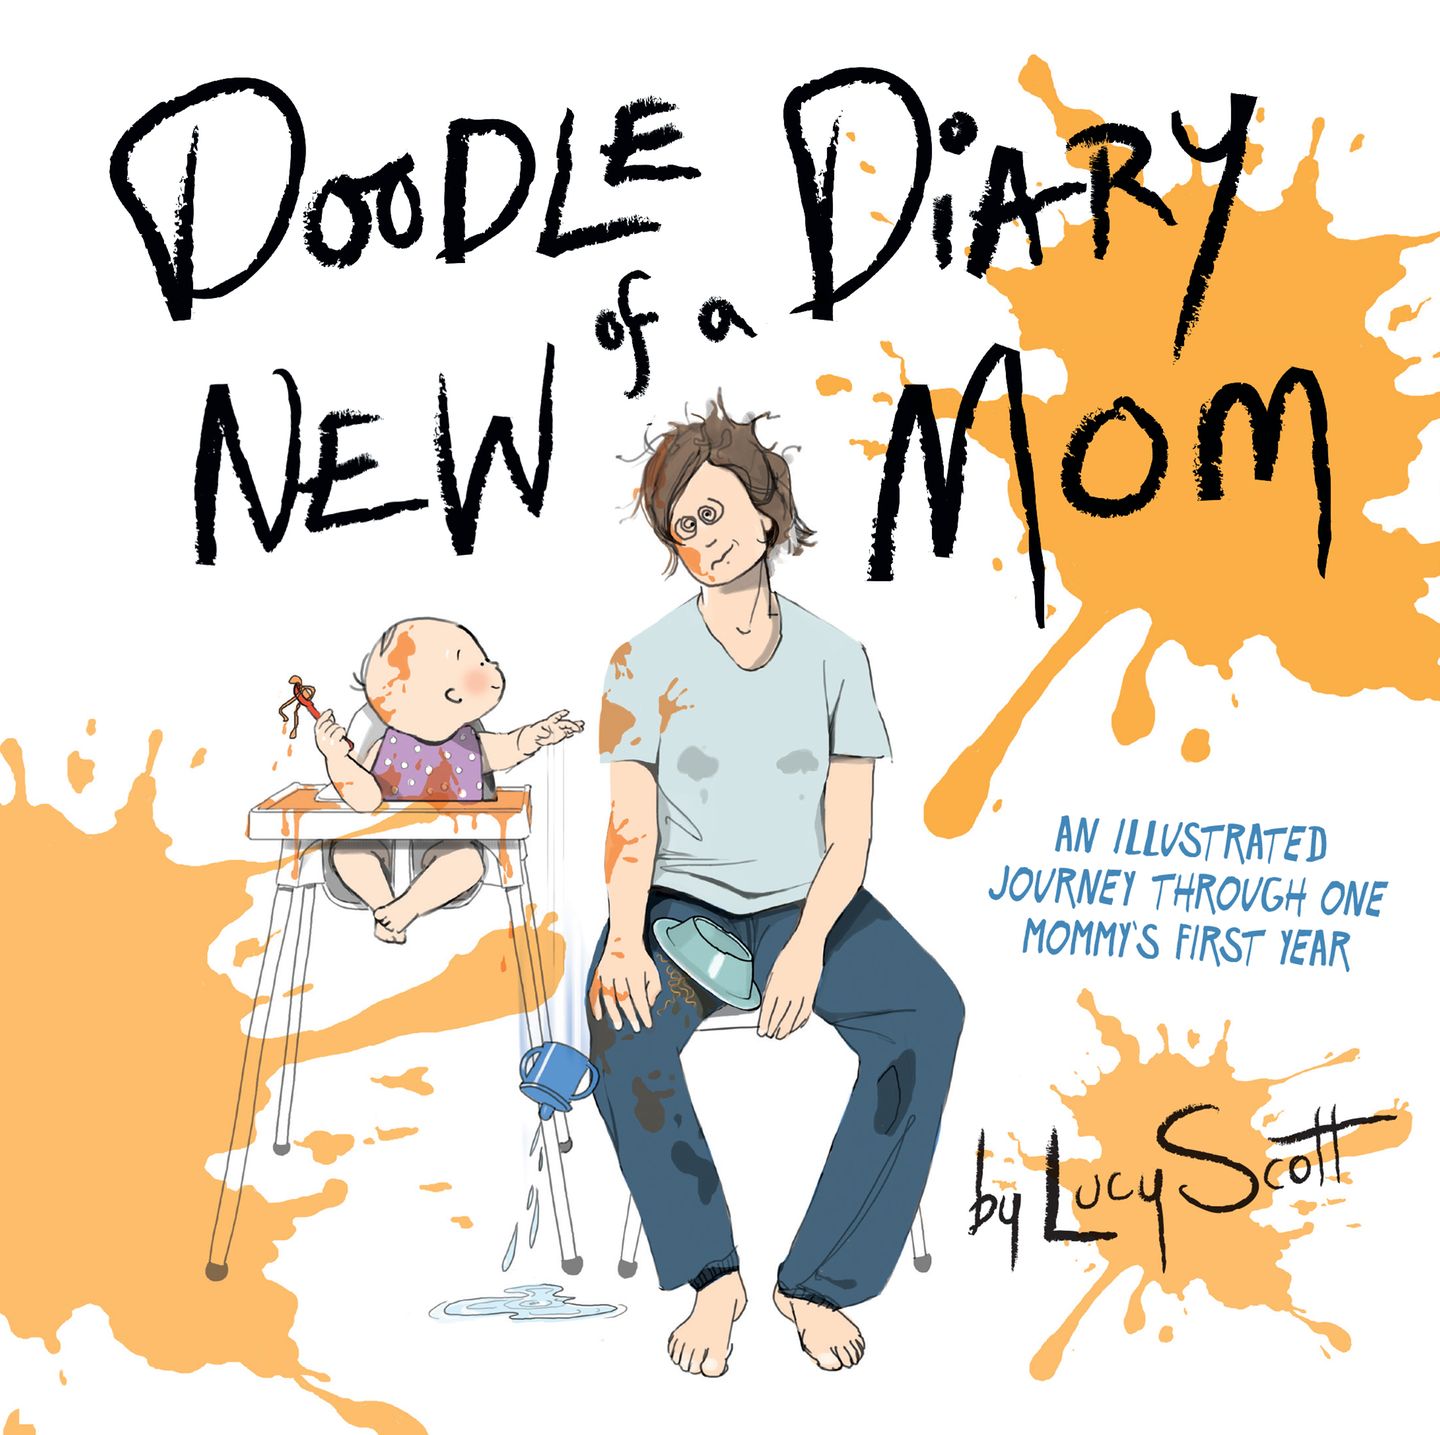 So wahr!: Mehr lustige Illustrationen findet ihr in dem Buch "Doodle Diary Of A New Mom". Erhältlich zum Beispiel bei Amazon.